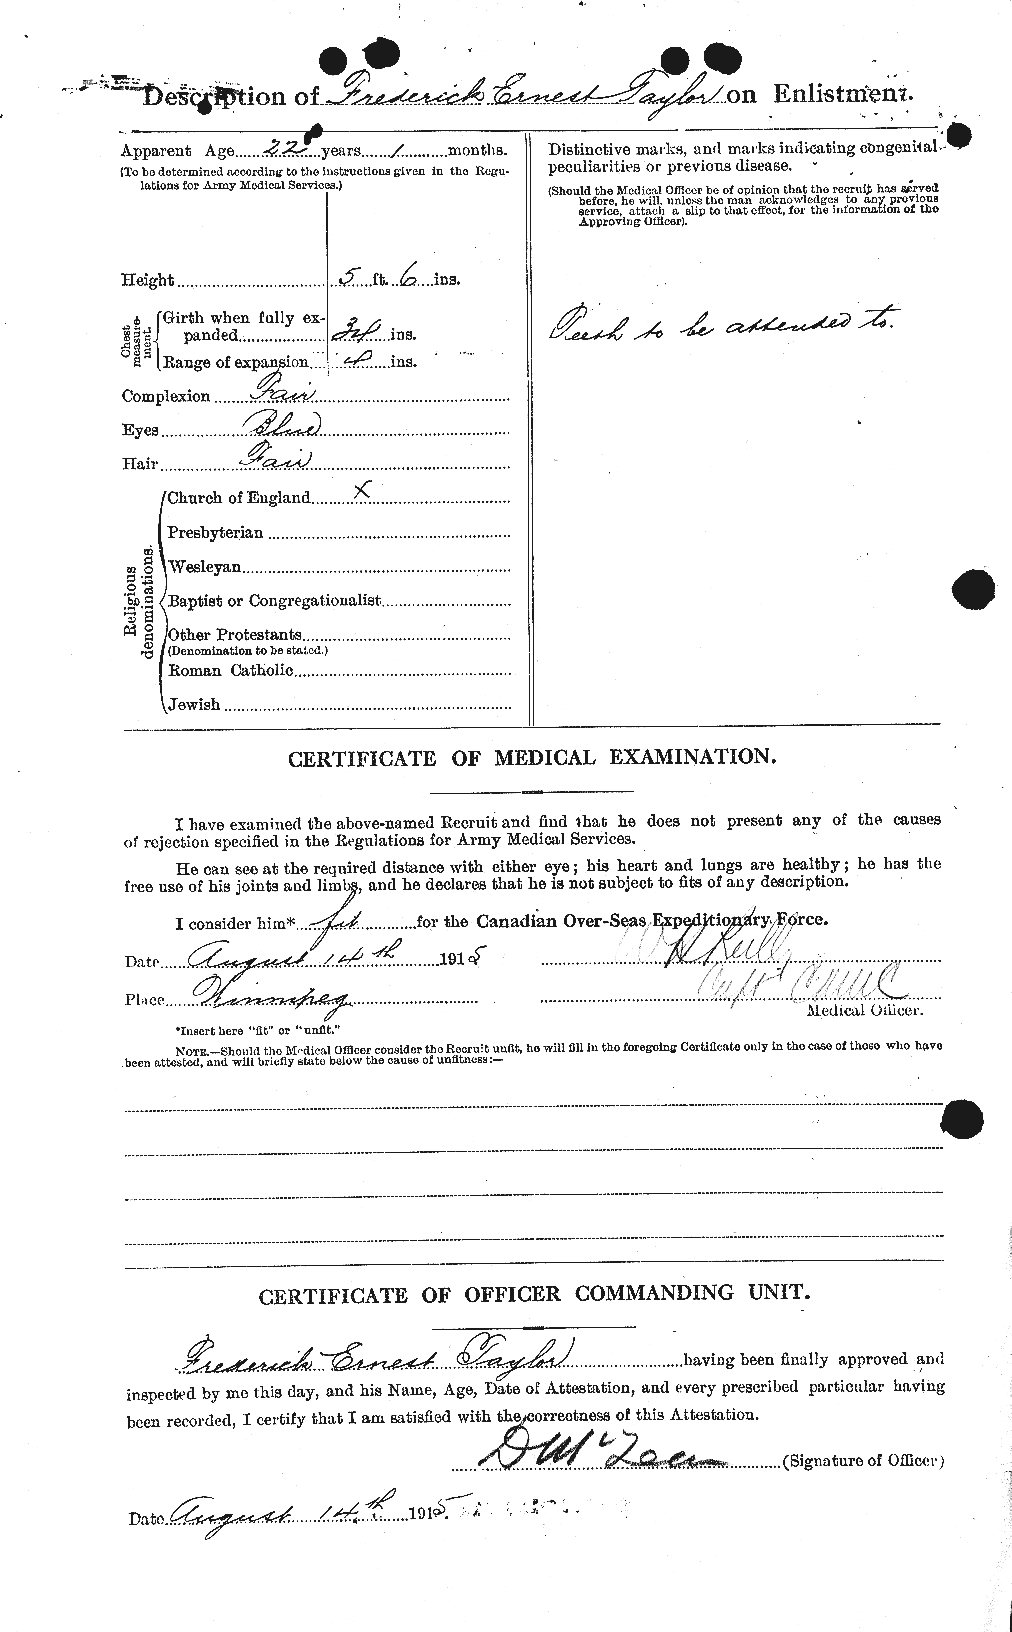 Dossiers du Personnel de la Première Guerre mondiale - CEC 625799b